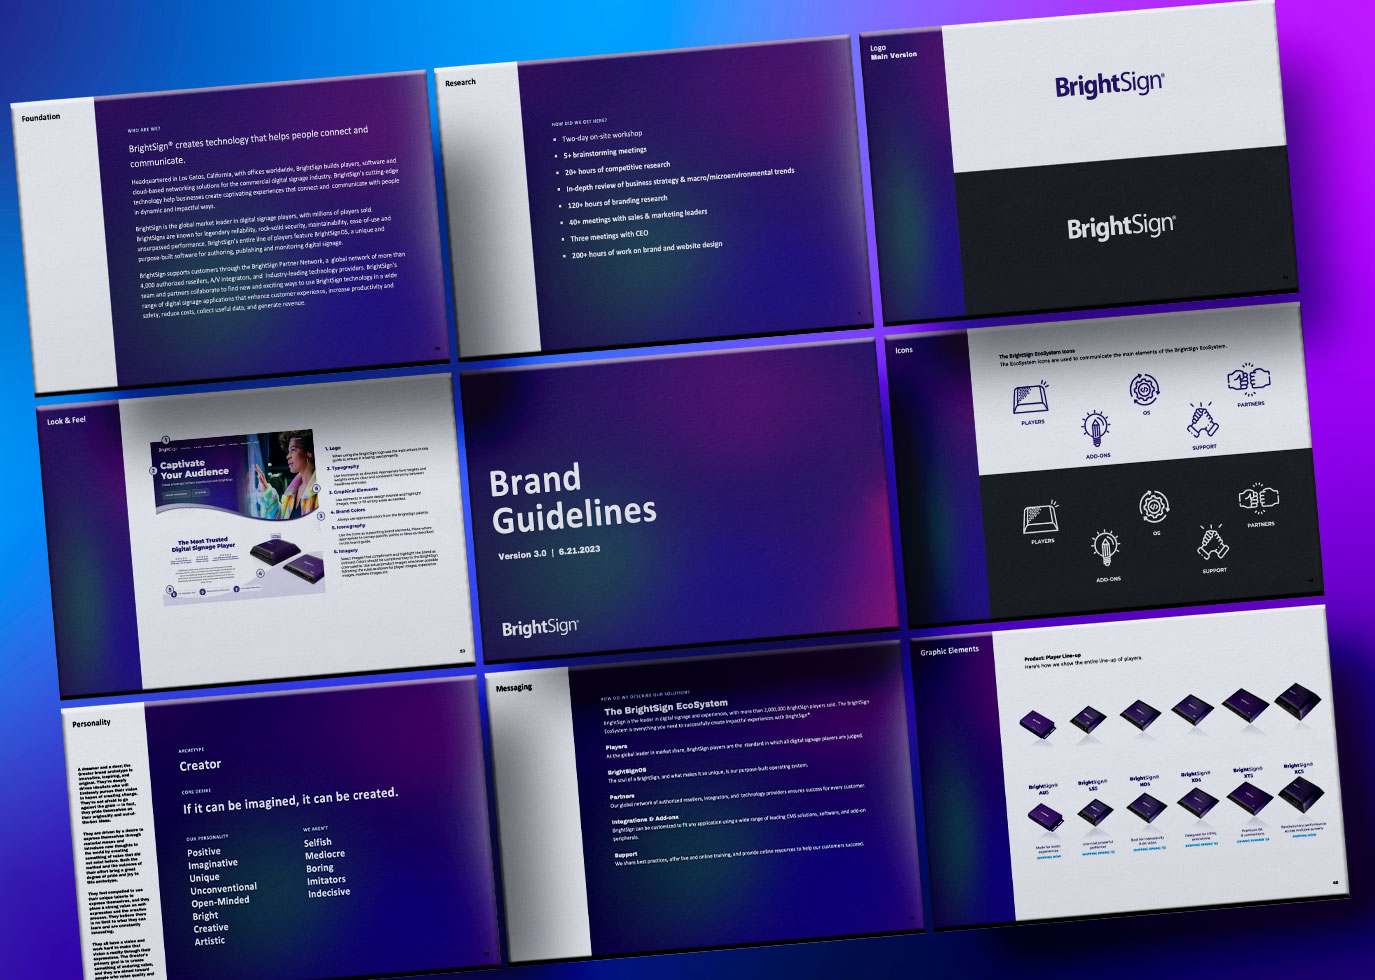 BrightSign's Brand Guide Presentation